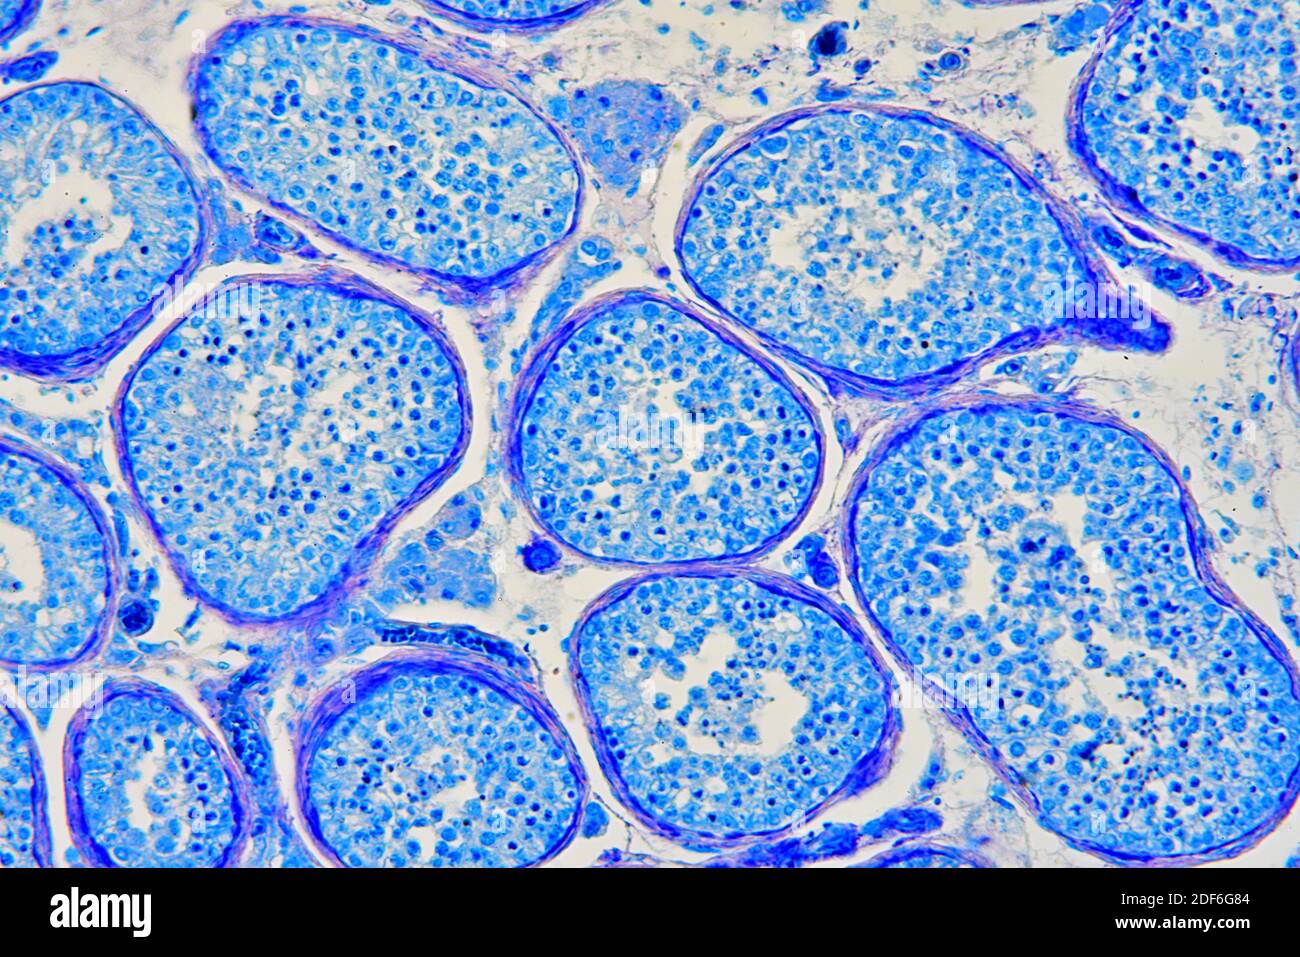 Sección testicular o testicular humana que muestra túbulos seminíferos,  células de Leydig, células de Sertoli, espermatozoides y espermatogonia.  Microscopio óptico X200 Fotografía de stock - Alamy